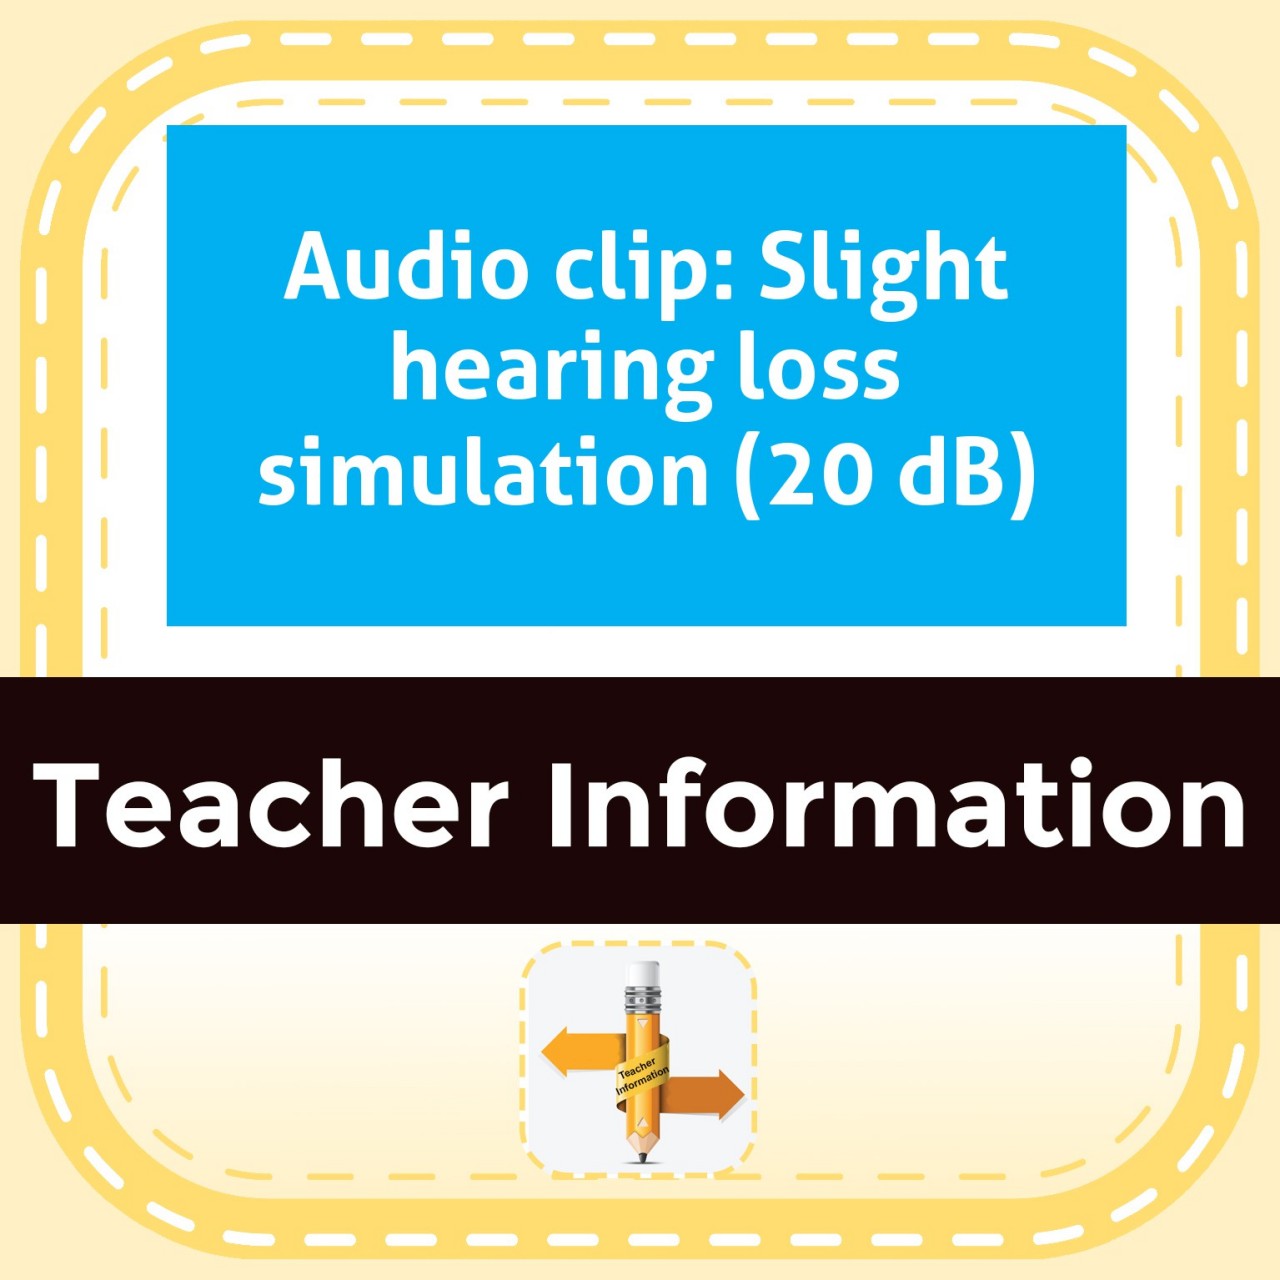 Audio clip: Slight hearing loss simulation (20 dB)